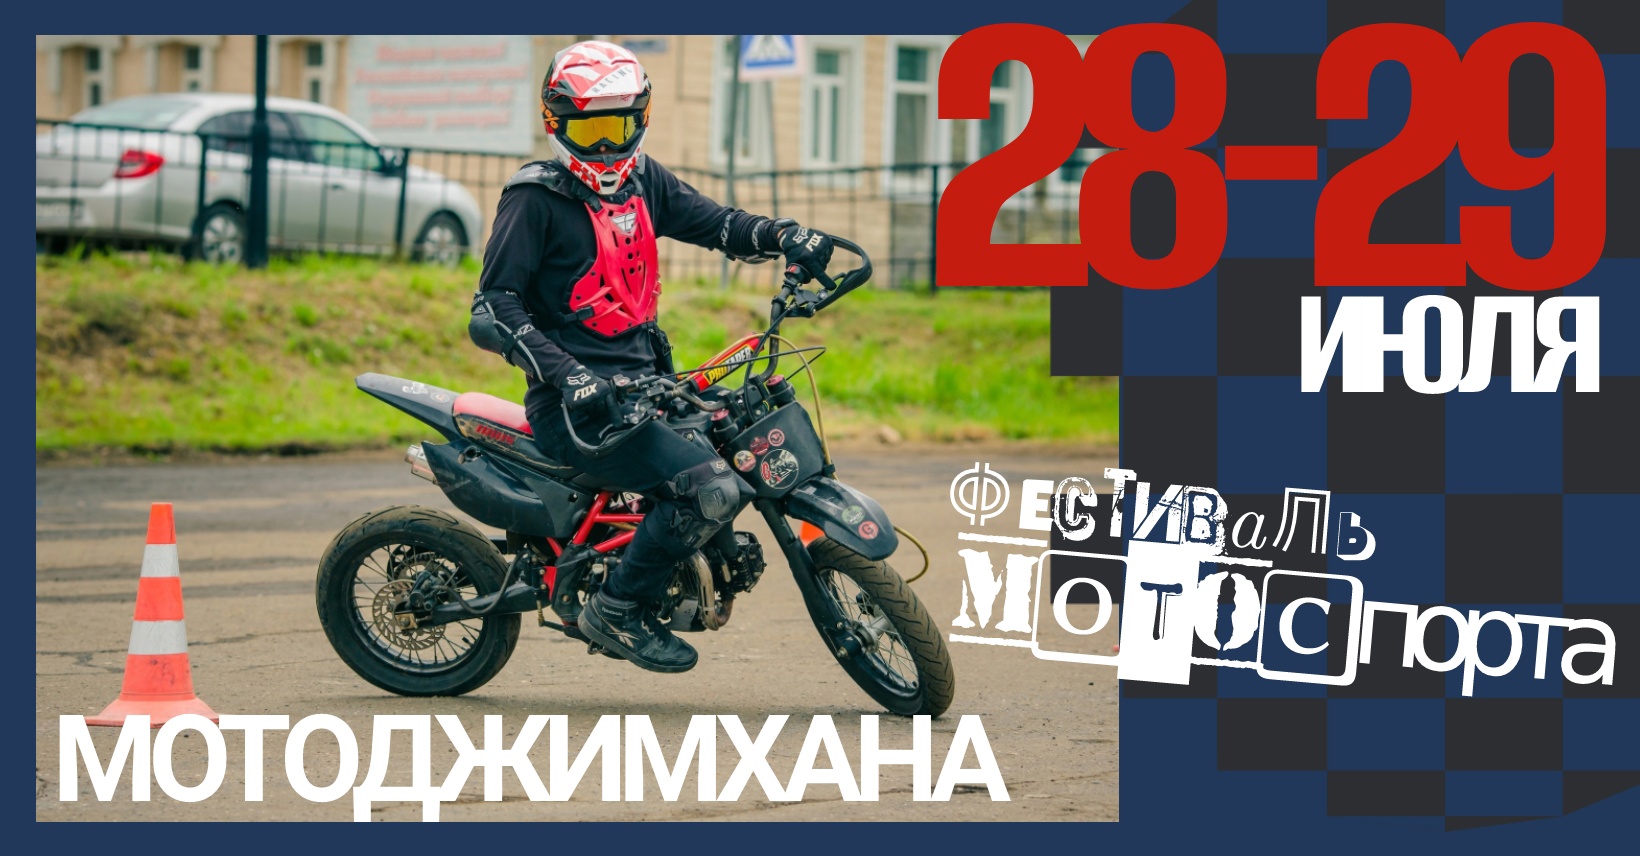 МотоЦиклы: Впервые в Твери пройдет Фестиваль мотоспорта